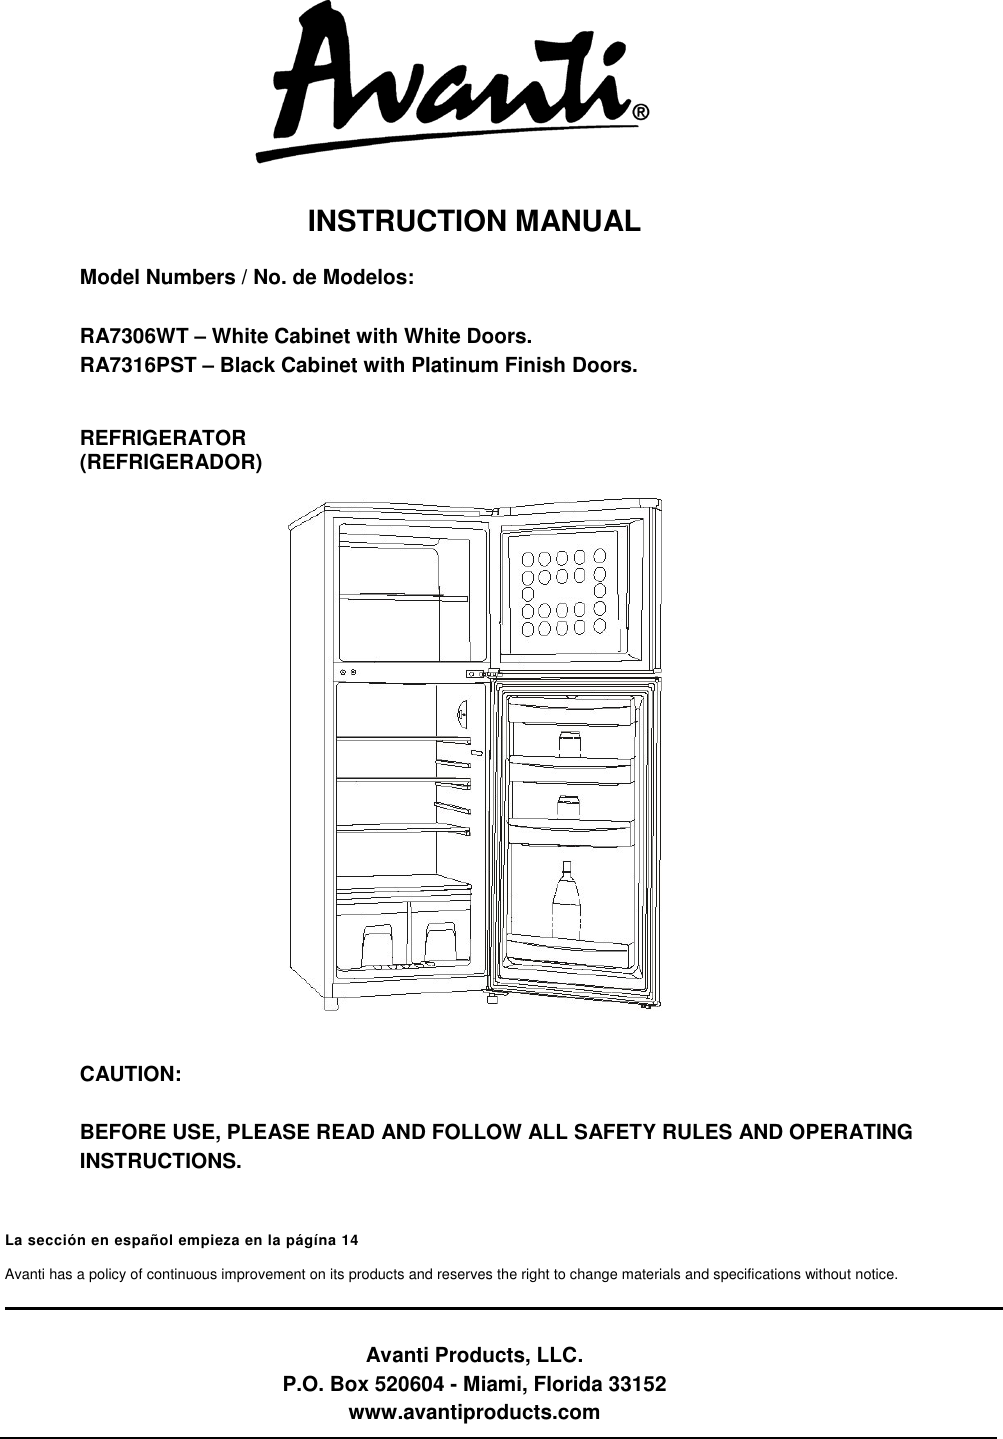 avanti-refrigerator-ra7306wt-users-manual